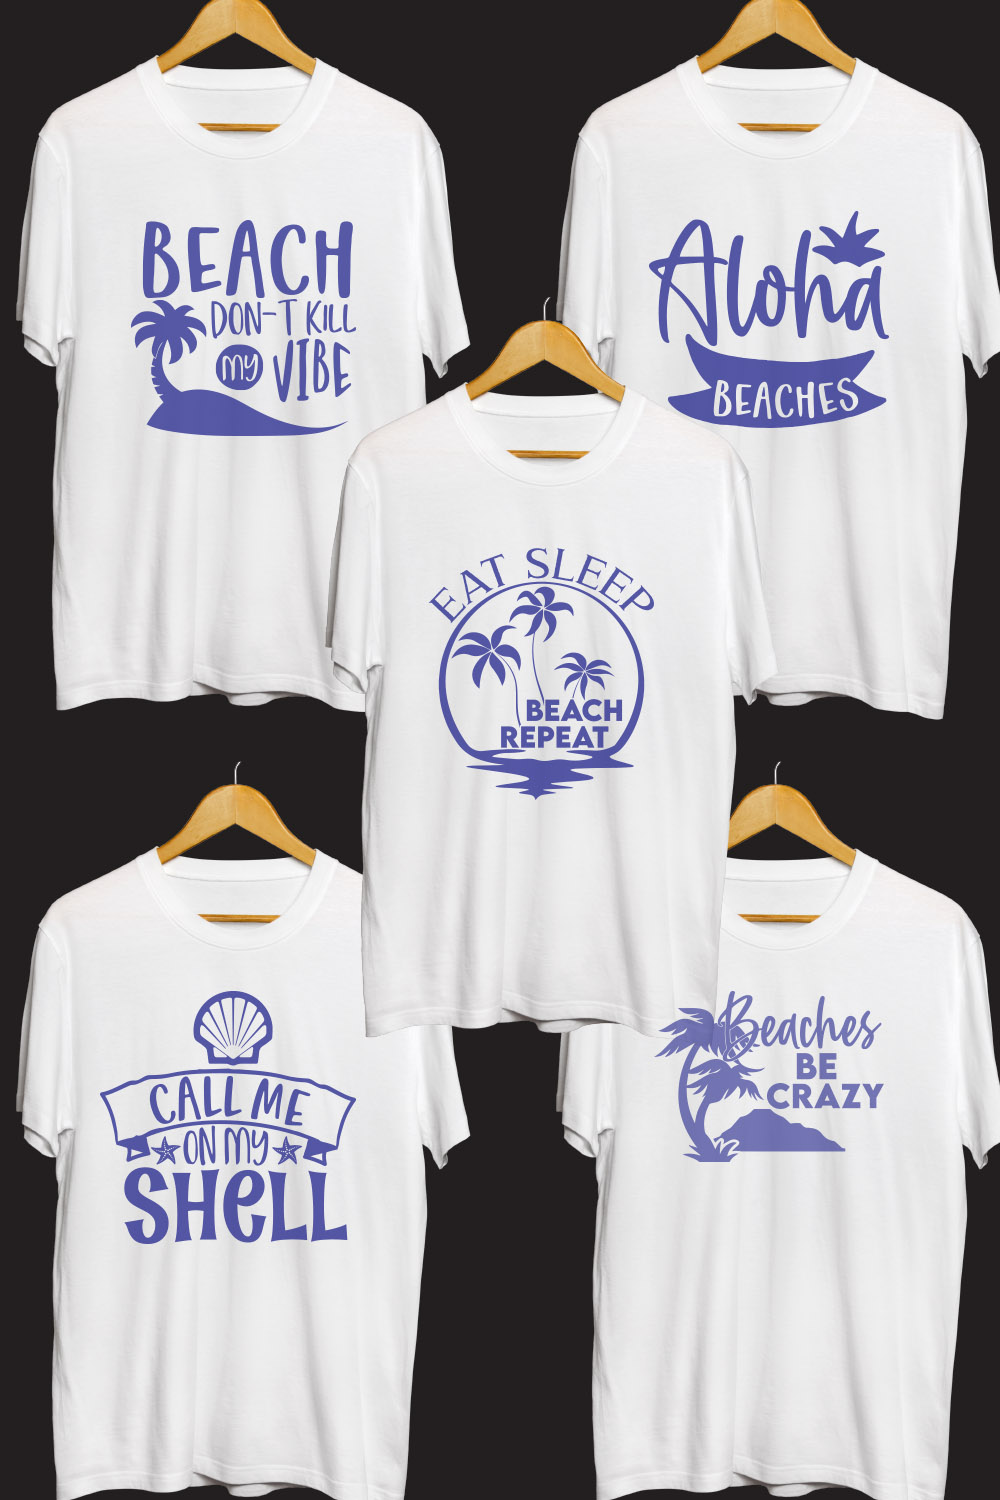 Beach SVG T Shirt Designs Bundle pinterest preview image.